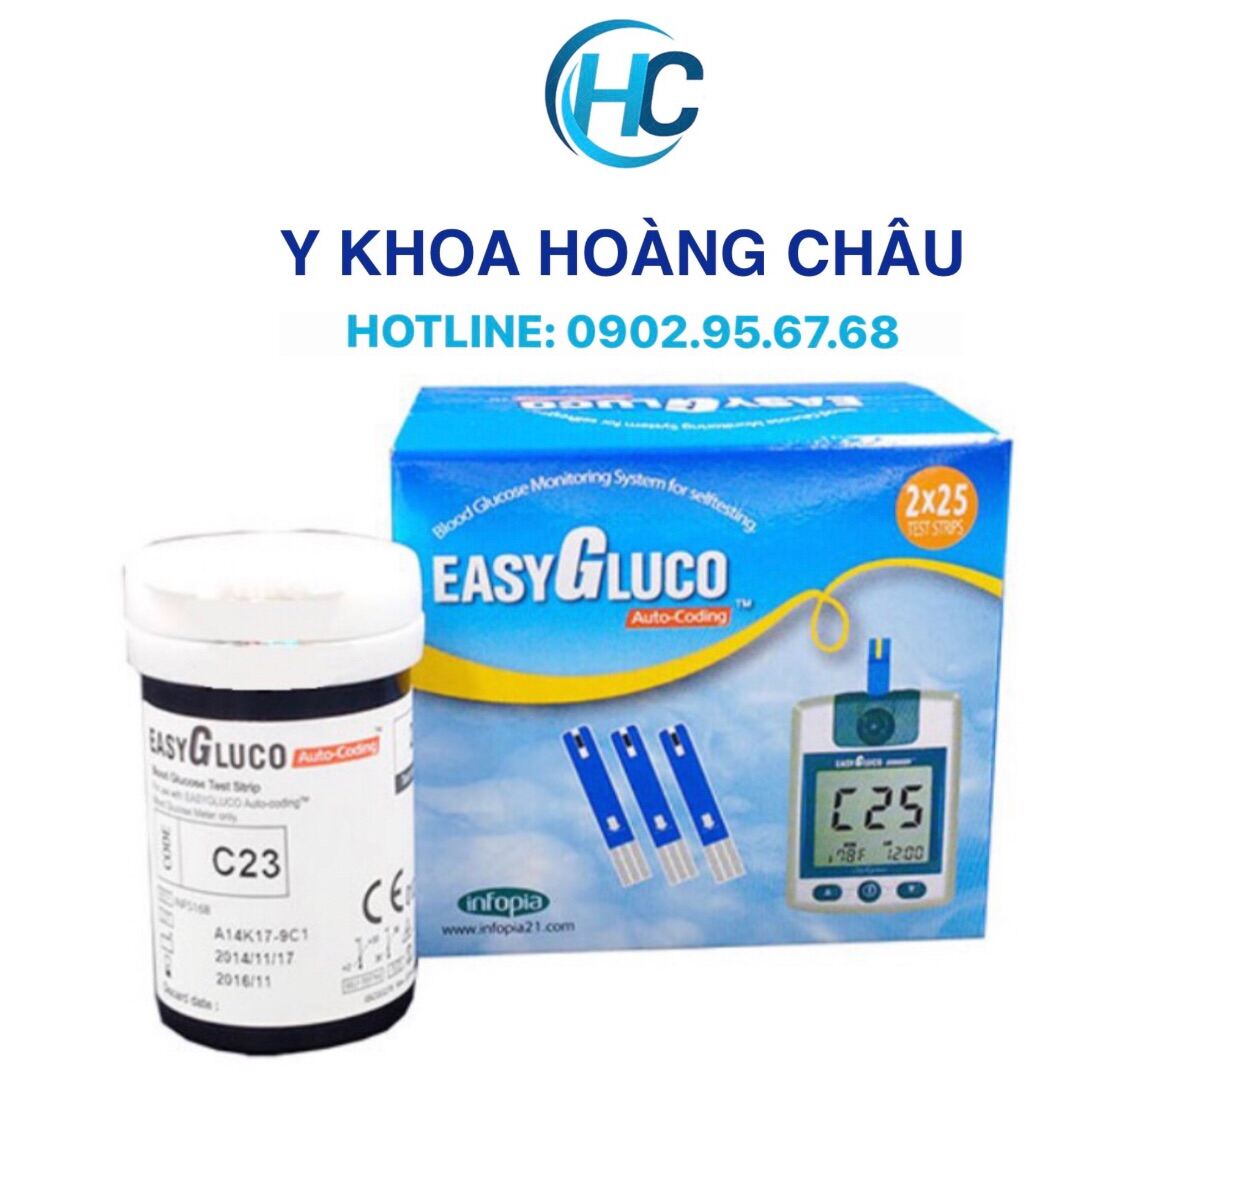 CHÍNH HÃNG Hộp 50 que thử dùng cho máy đường huyết Easy Gluco Hàn Quốc No